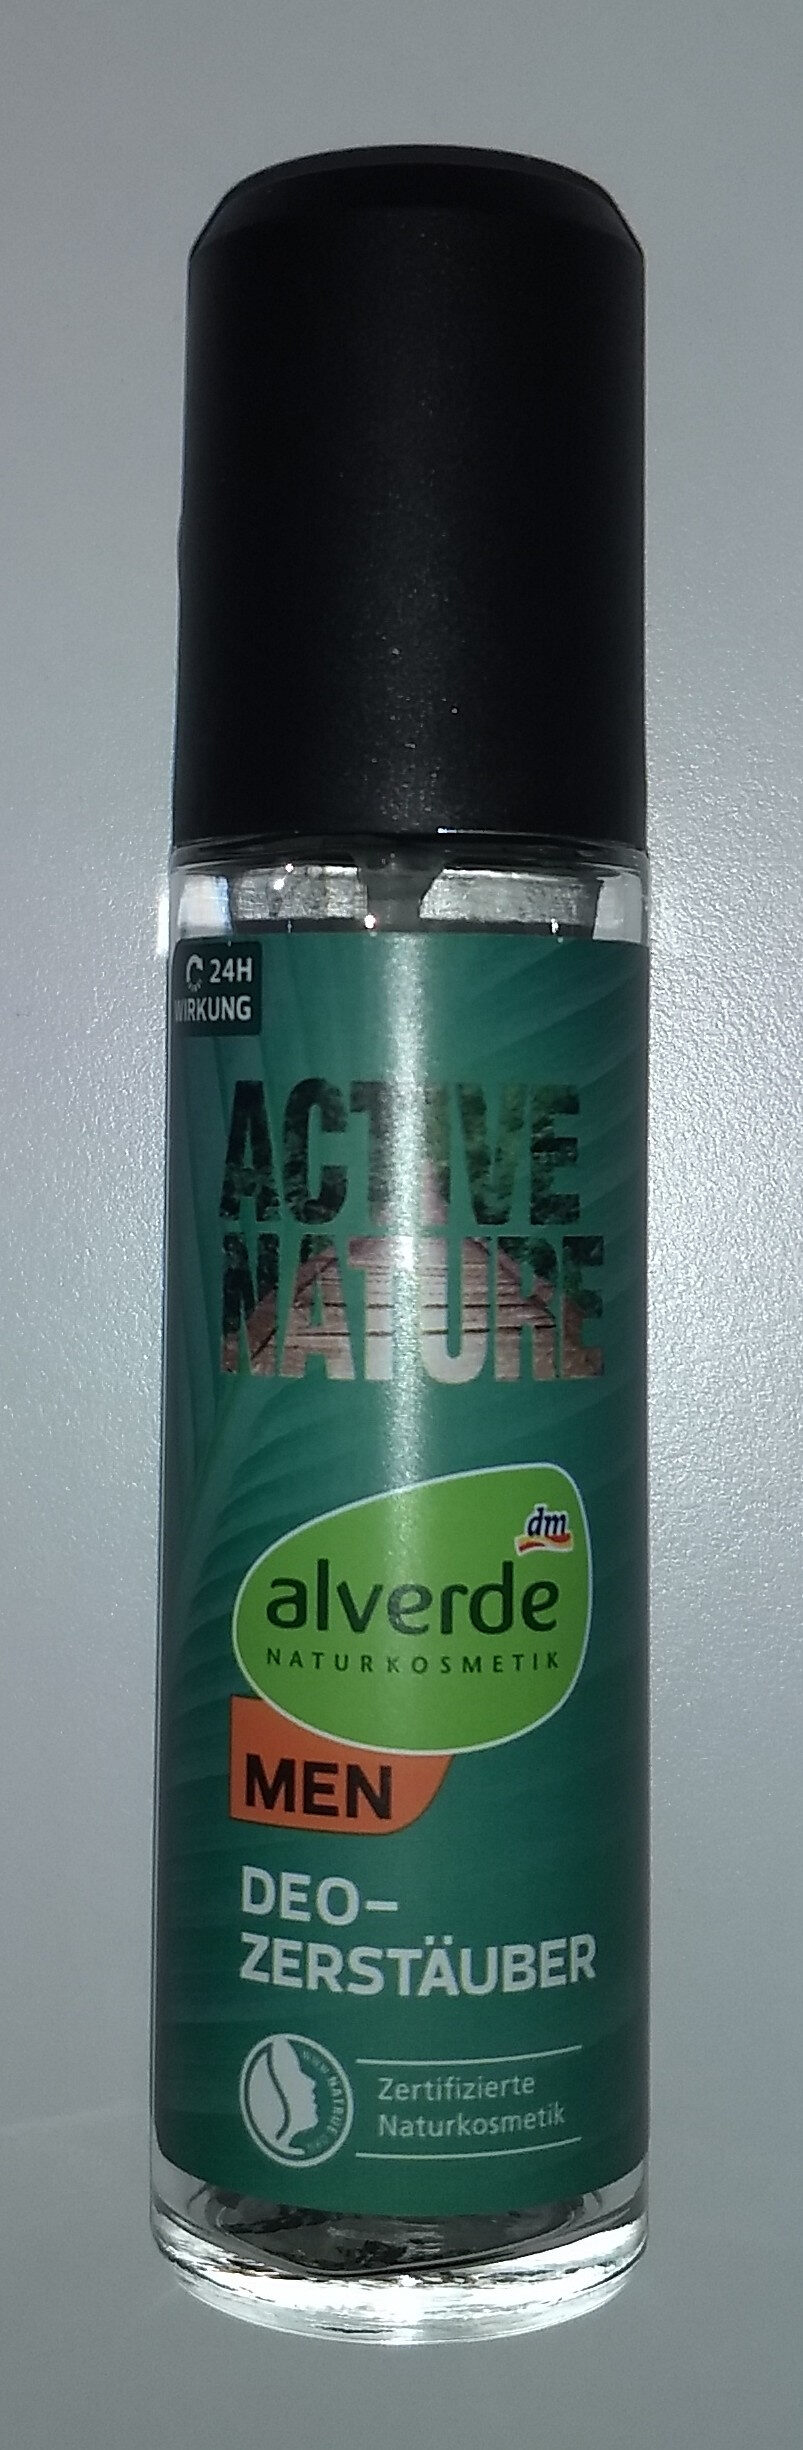 Active nature men deo Zerstäuber - Product - de